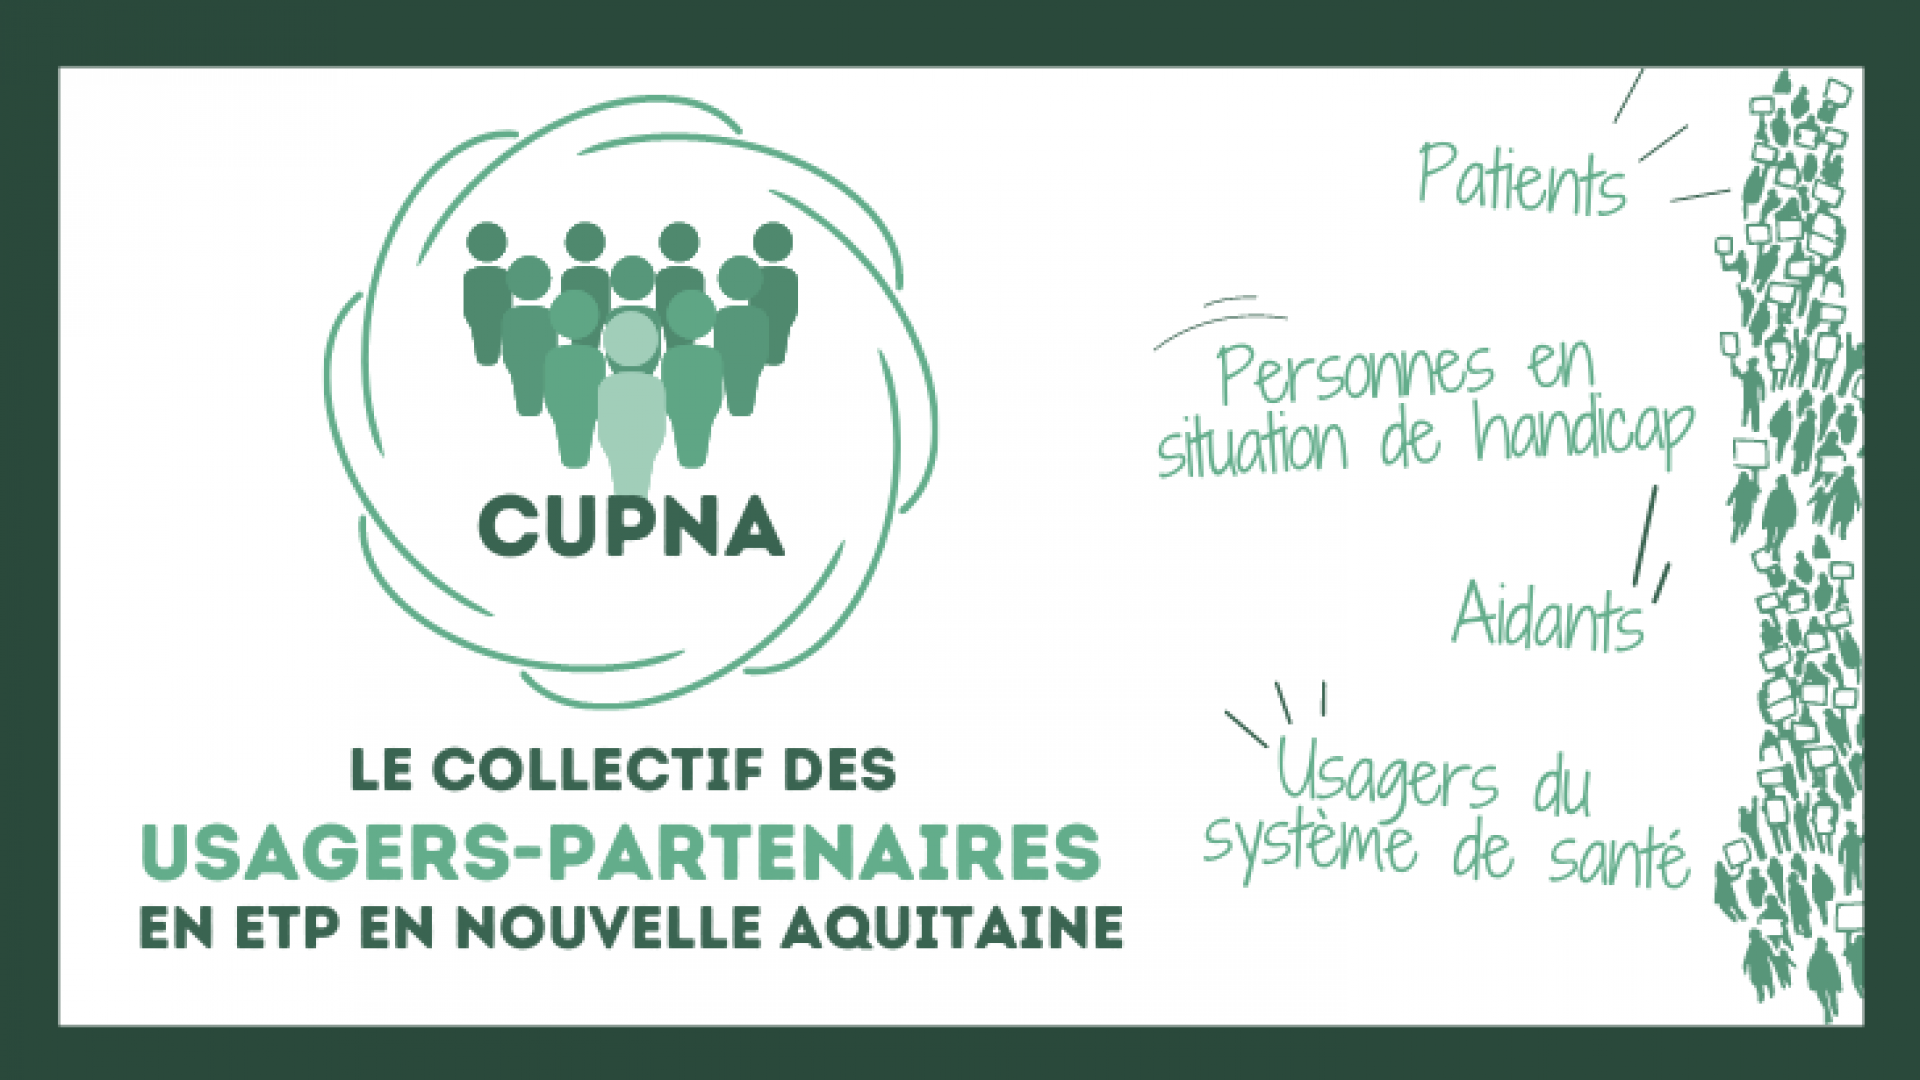 CUPNA, le Collectif des Usagers Partenaires en ETP de Nouvelle Aquitaine